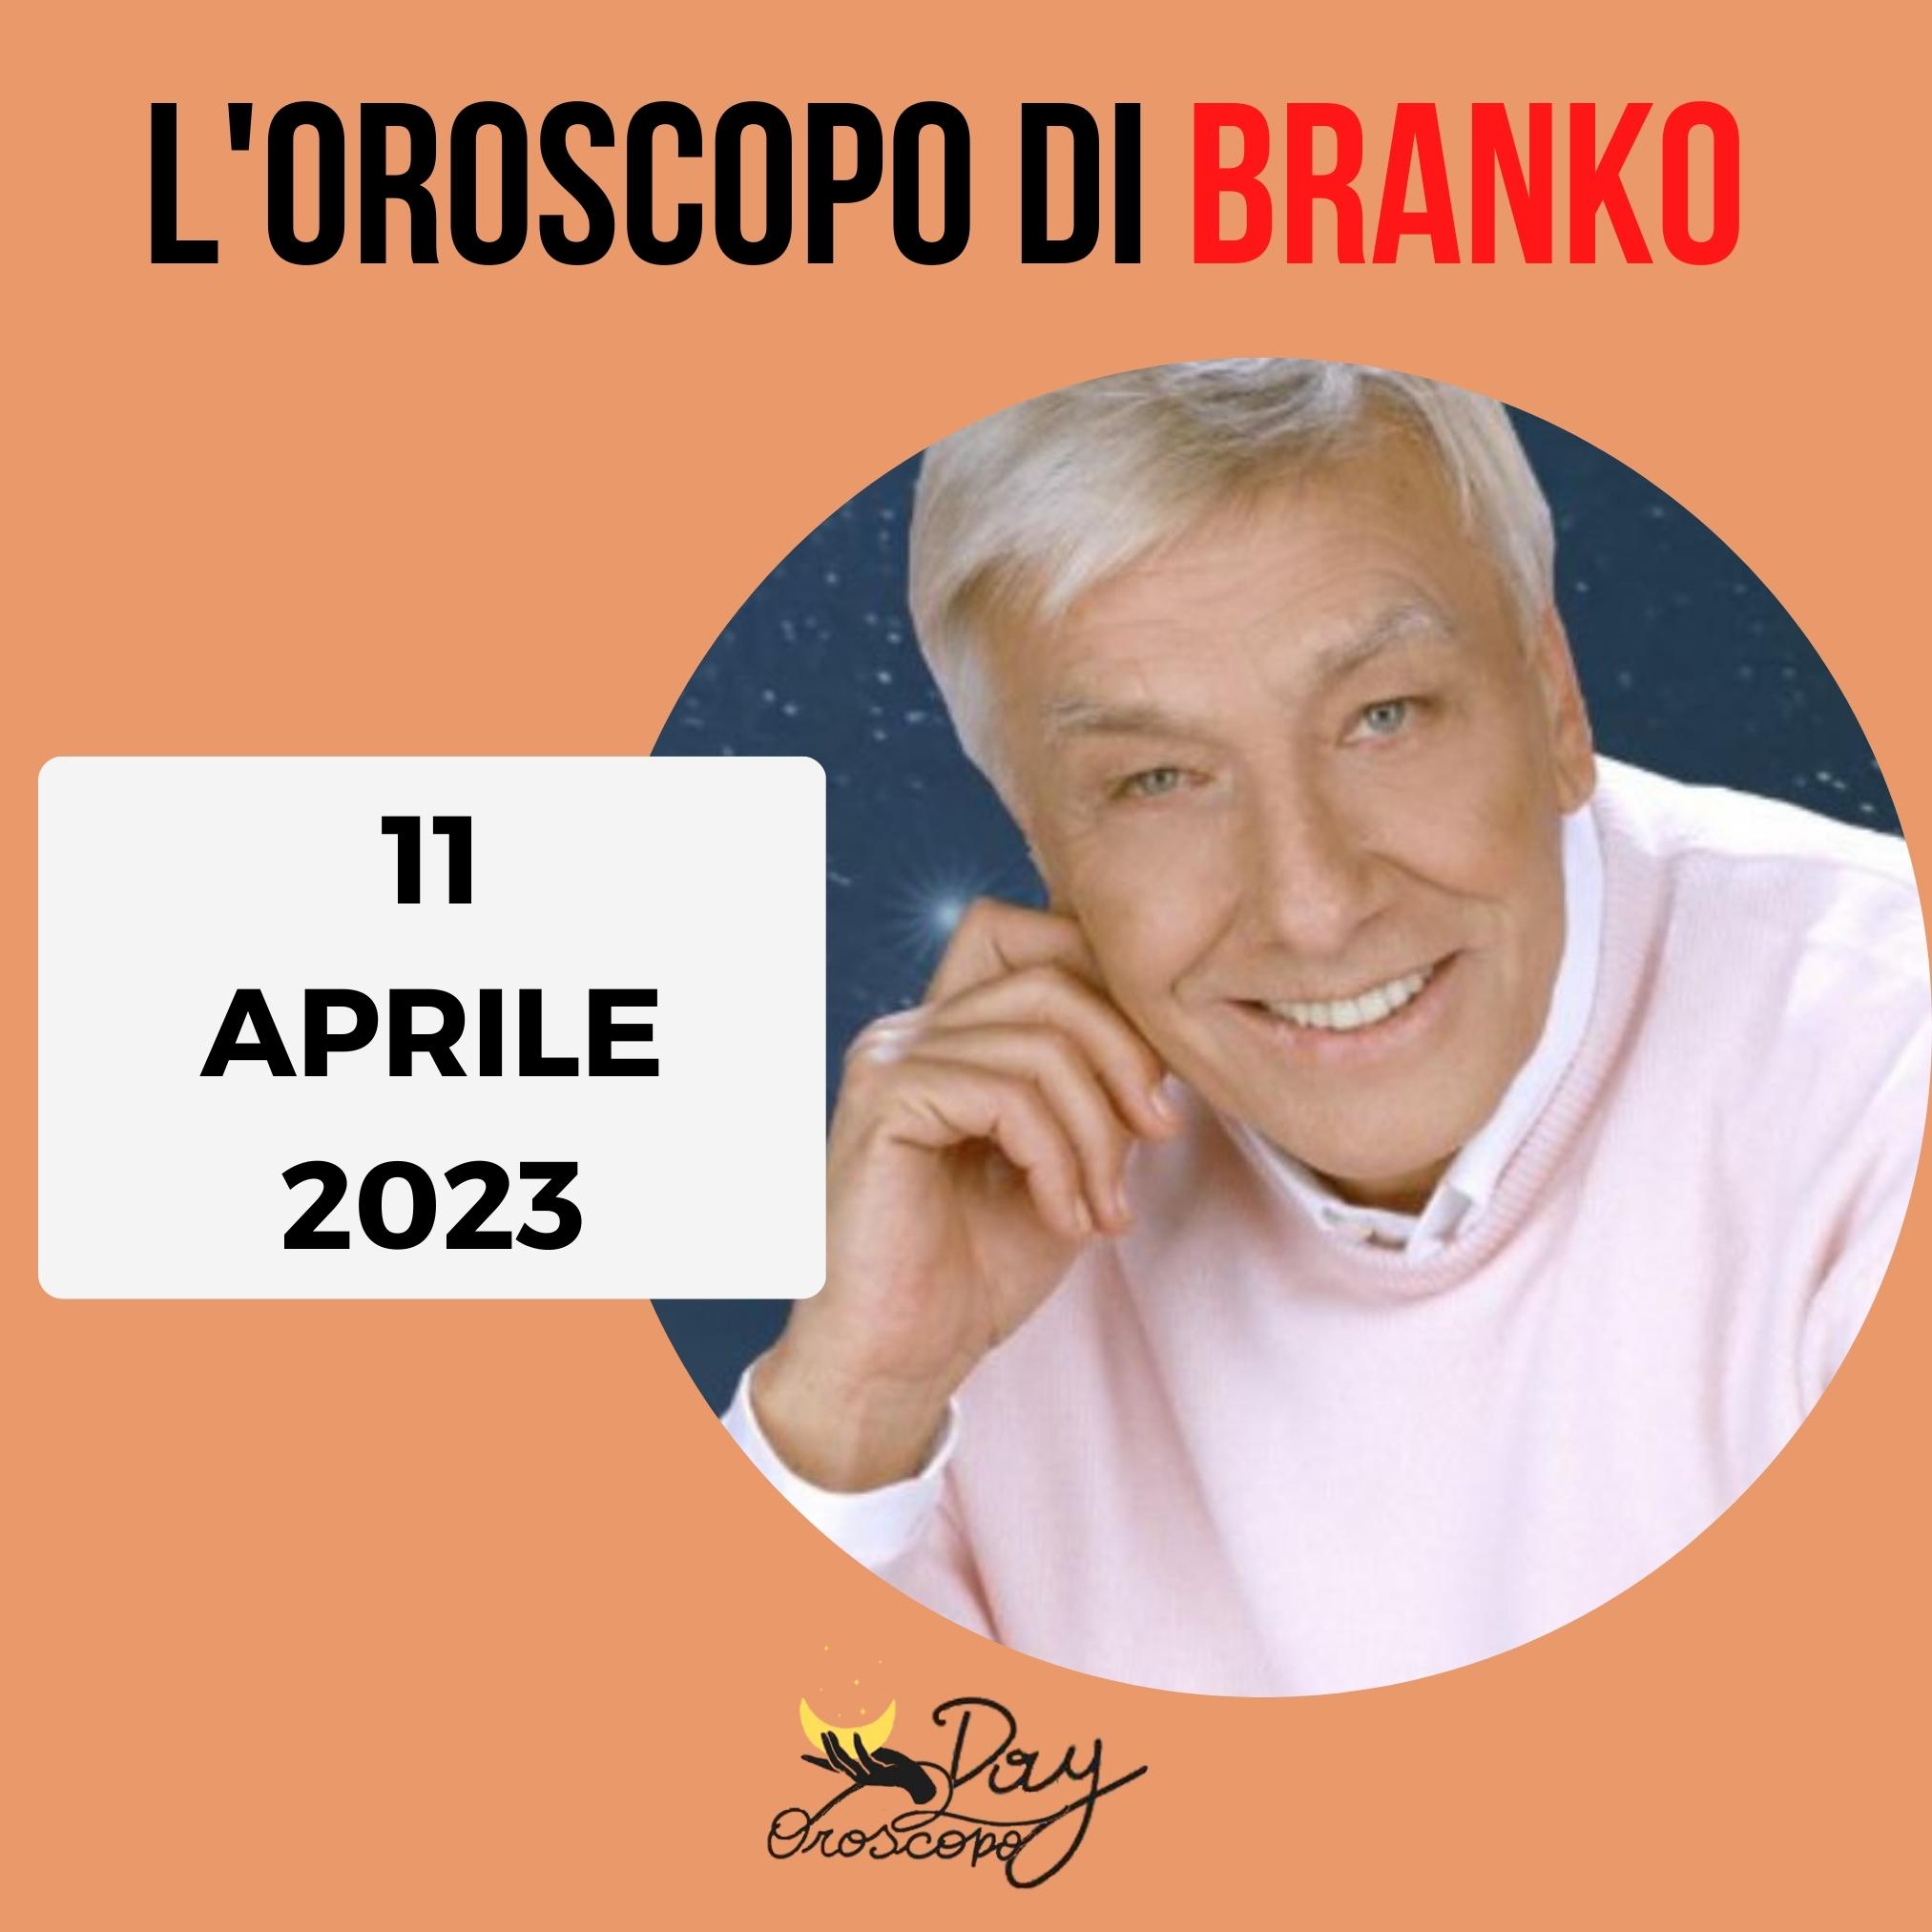 Oroscopo Branko oggi 11 aprile 2023